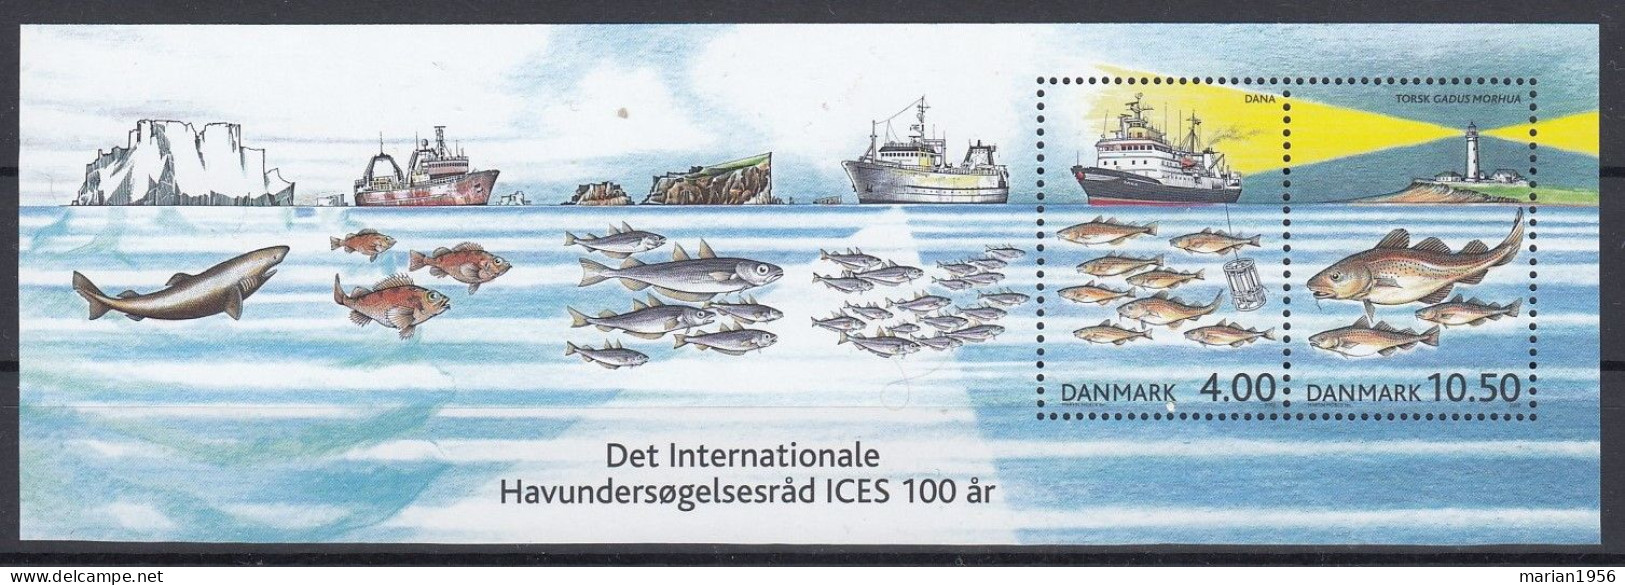 Denmark 2002 - POISSONS,PECHE,BATEAUX De PECHE - MNH - Other (Sea)